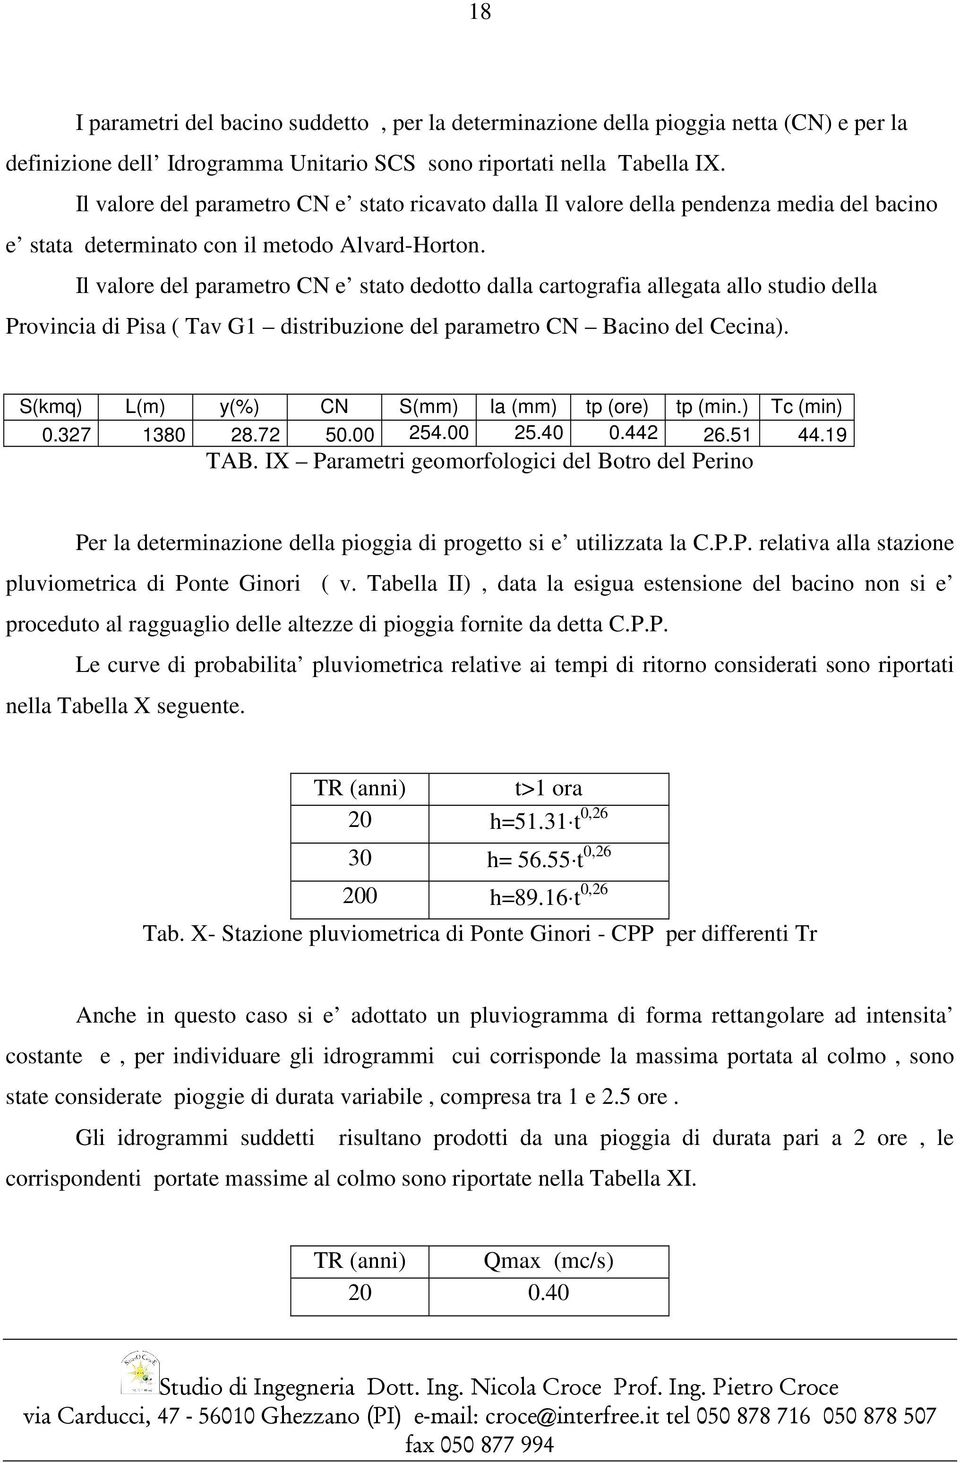 Il valore del parametro CN e stato dedotto dalla cartografia allegata allo studio della Provincia di Pisa ( Tav G1 distribuzione del parametro CN Bacino del Cecina).